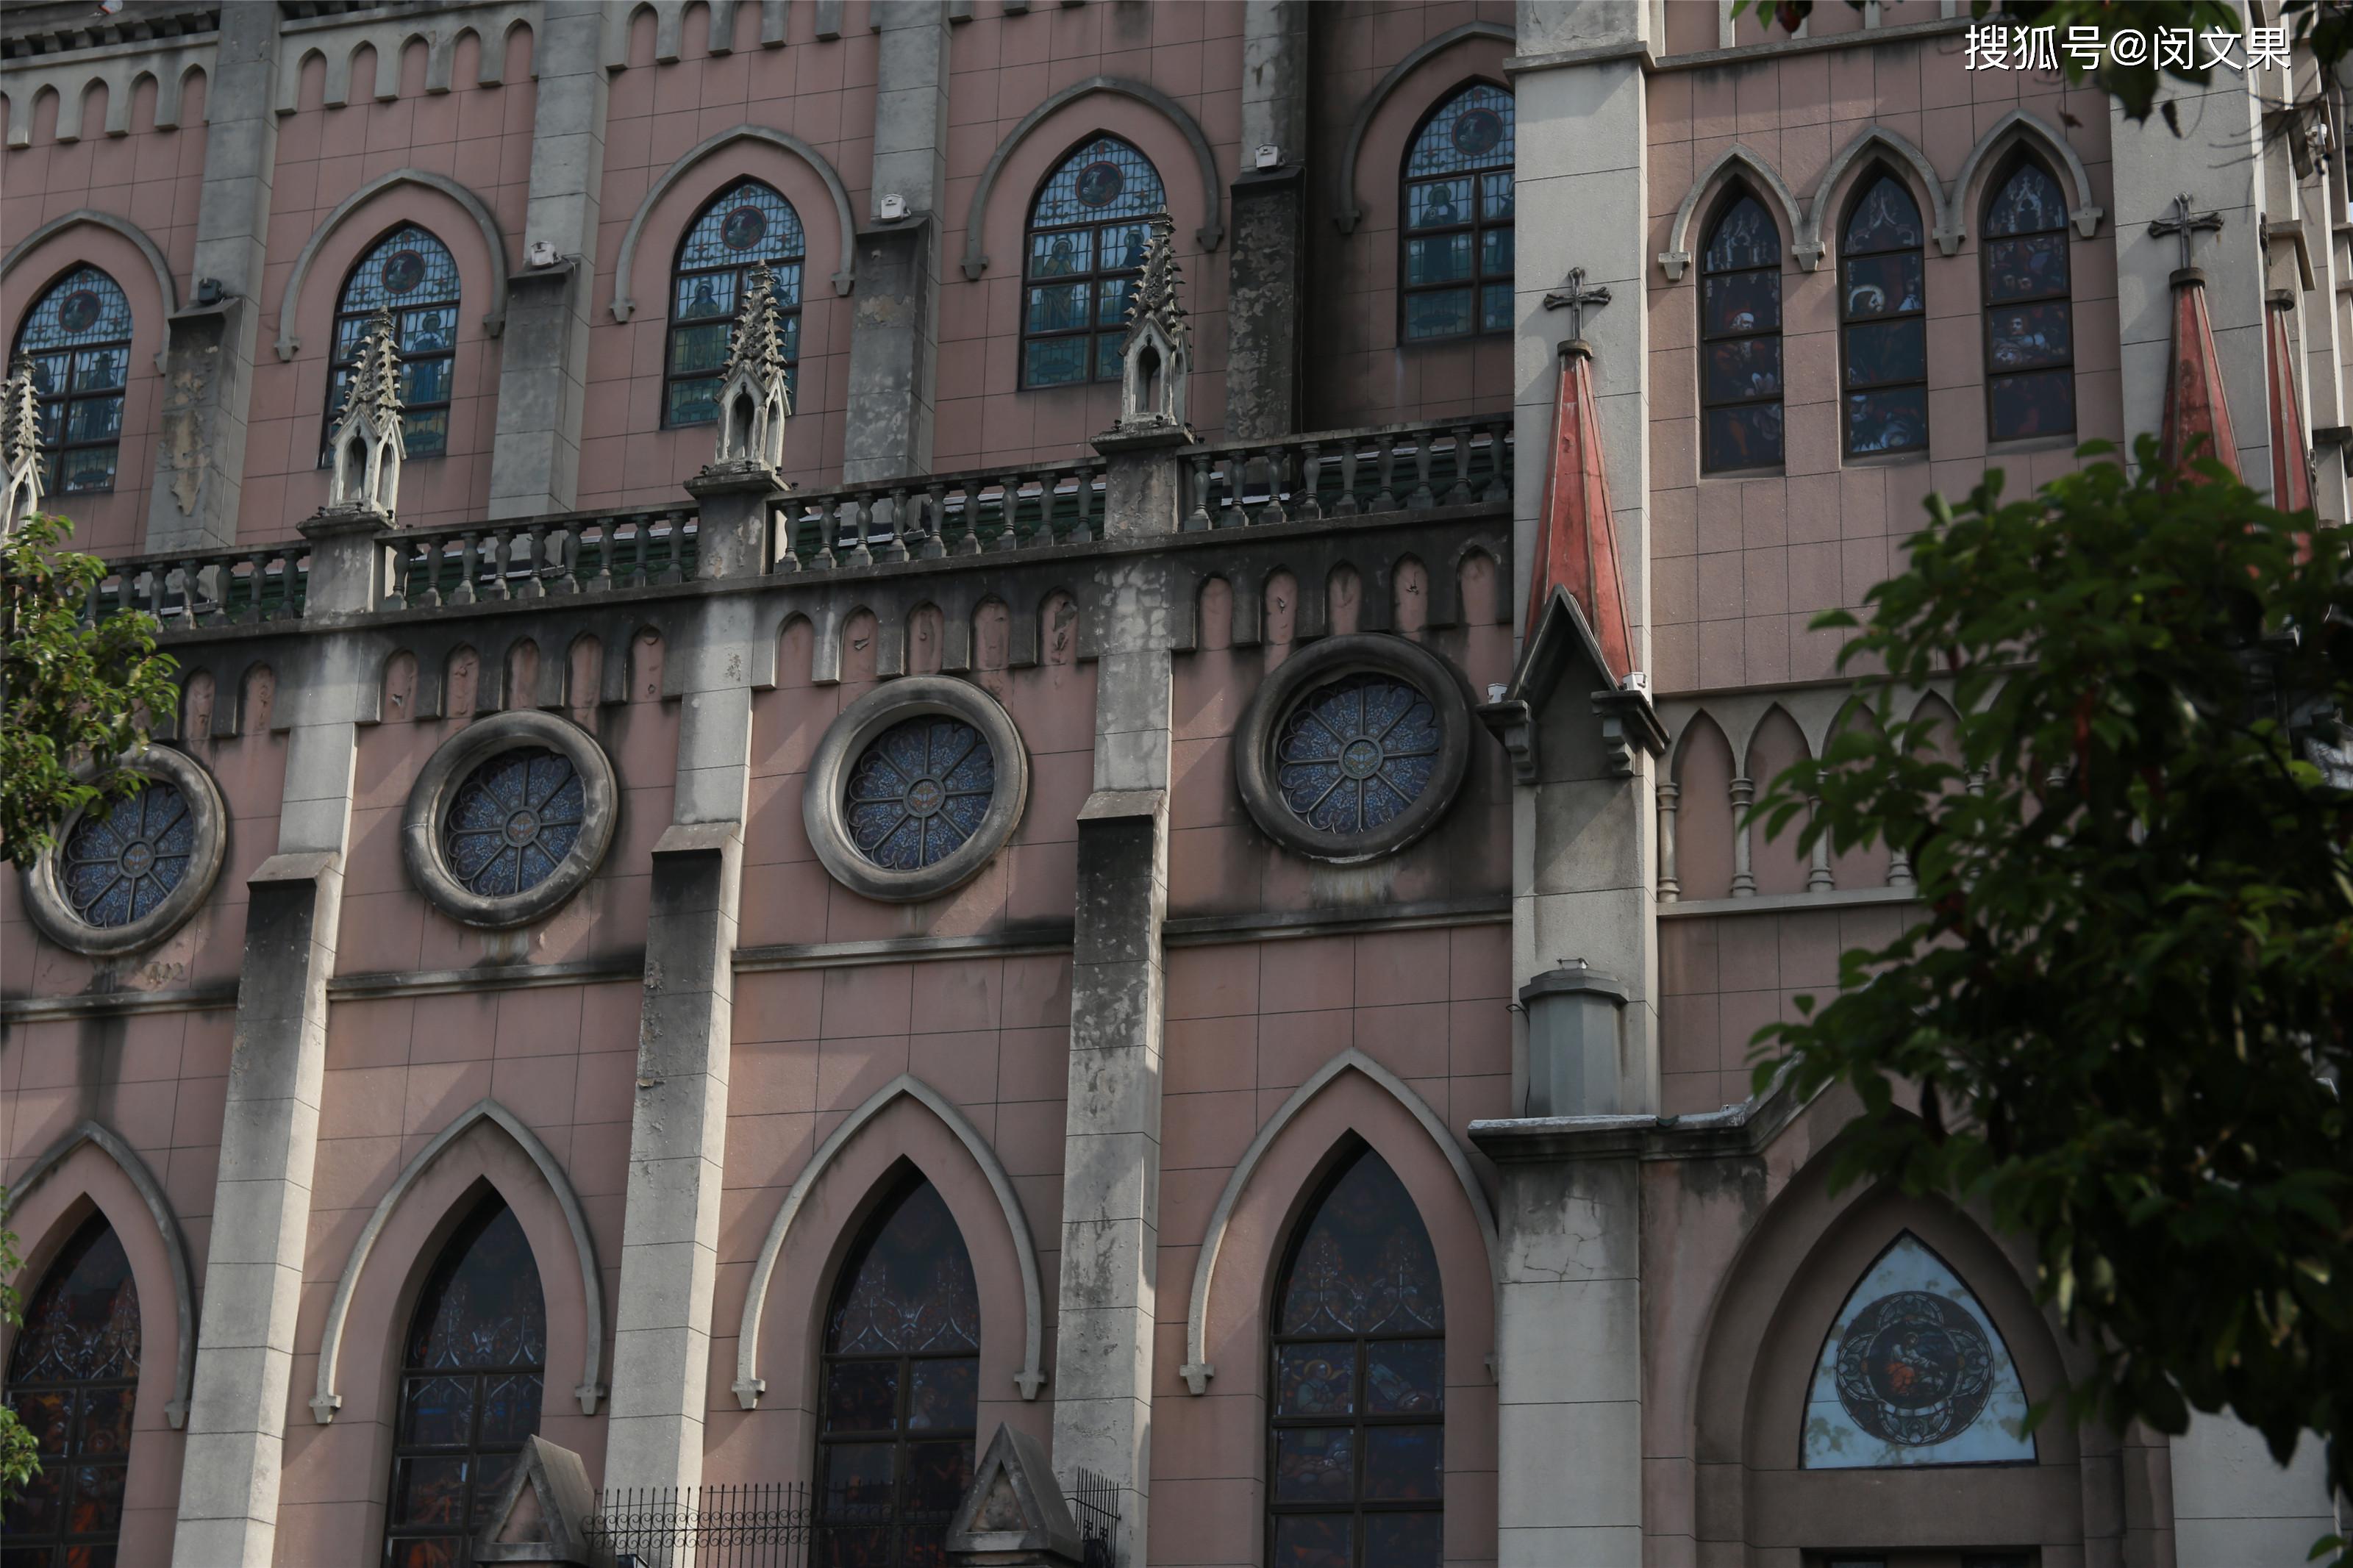 宁波药行街天主堂,有中国教堂目前最高钟楼_摄影